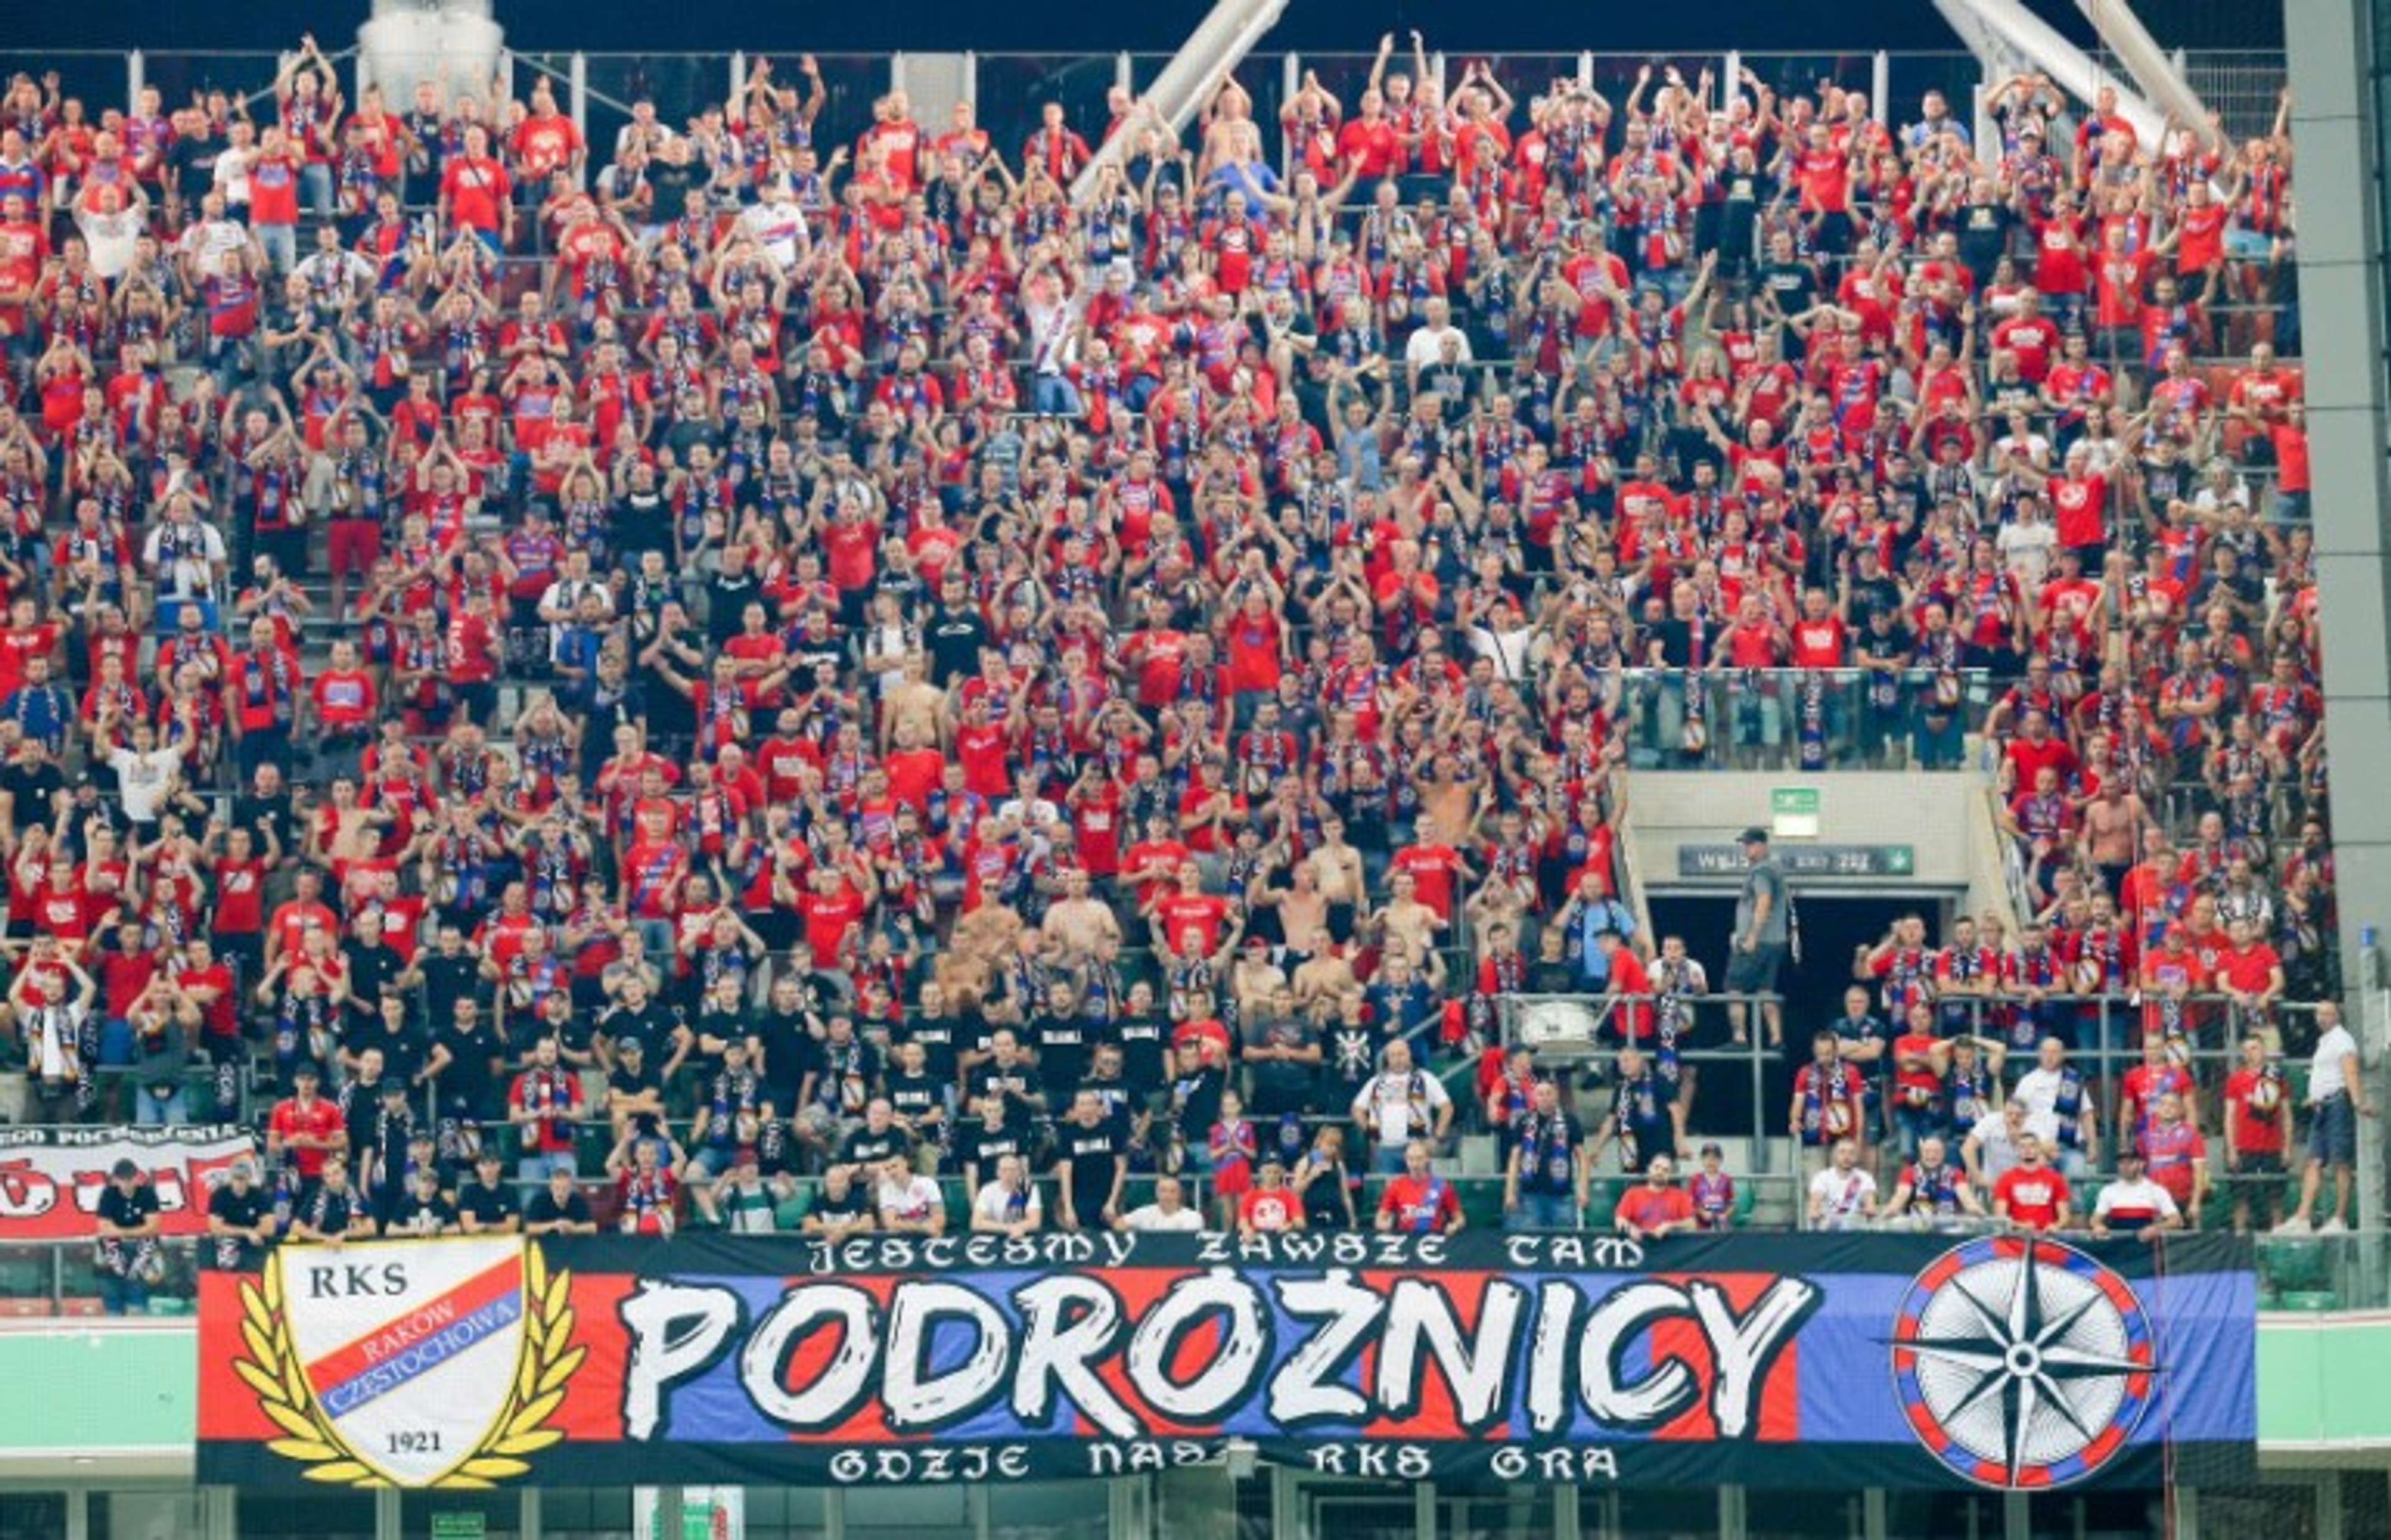 Raków Częstochowa fans